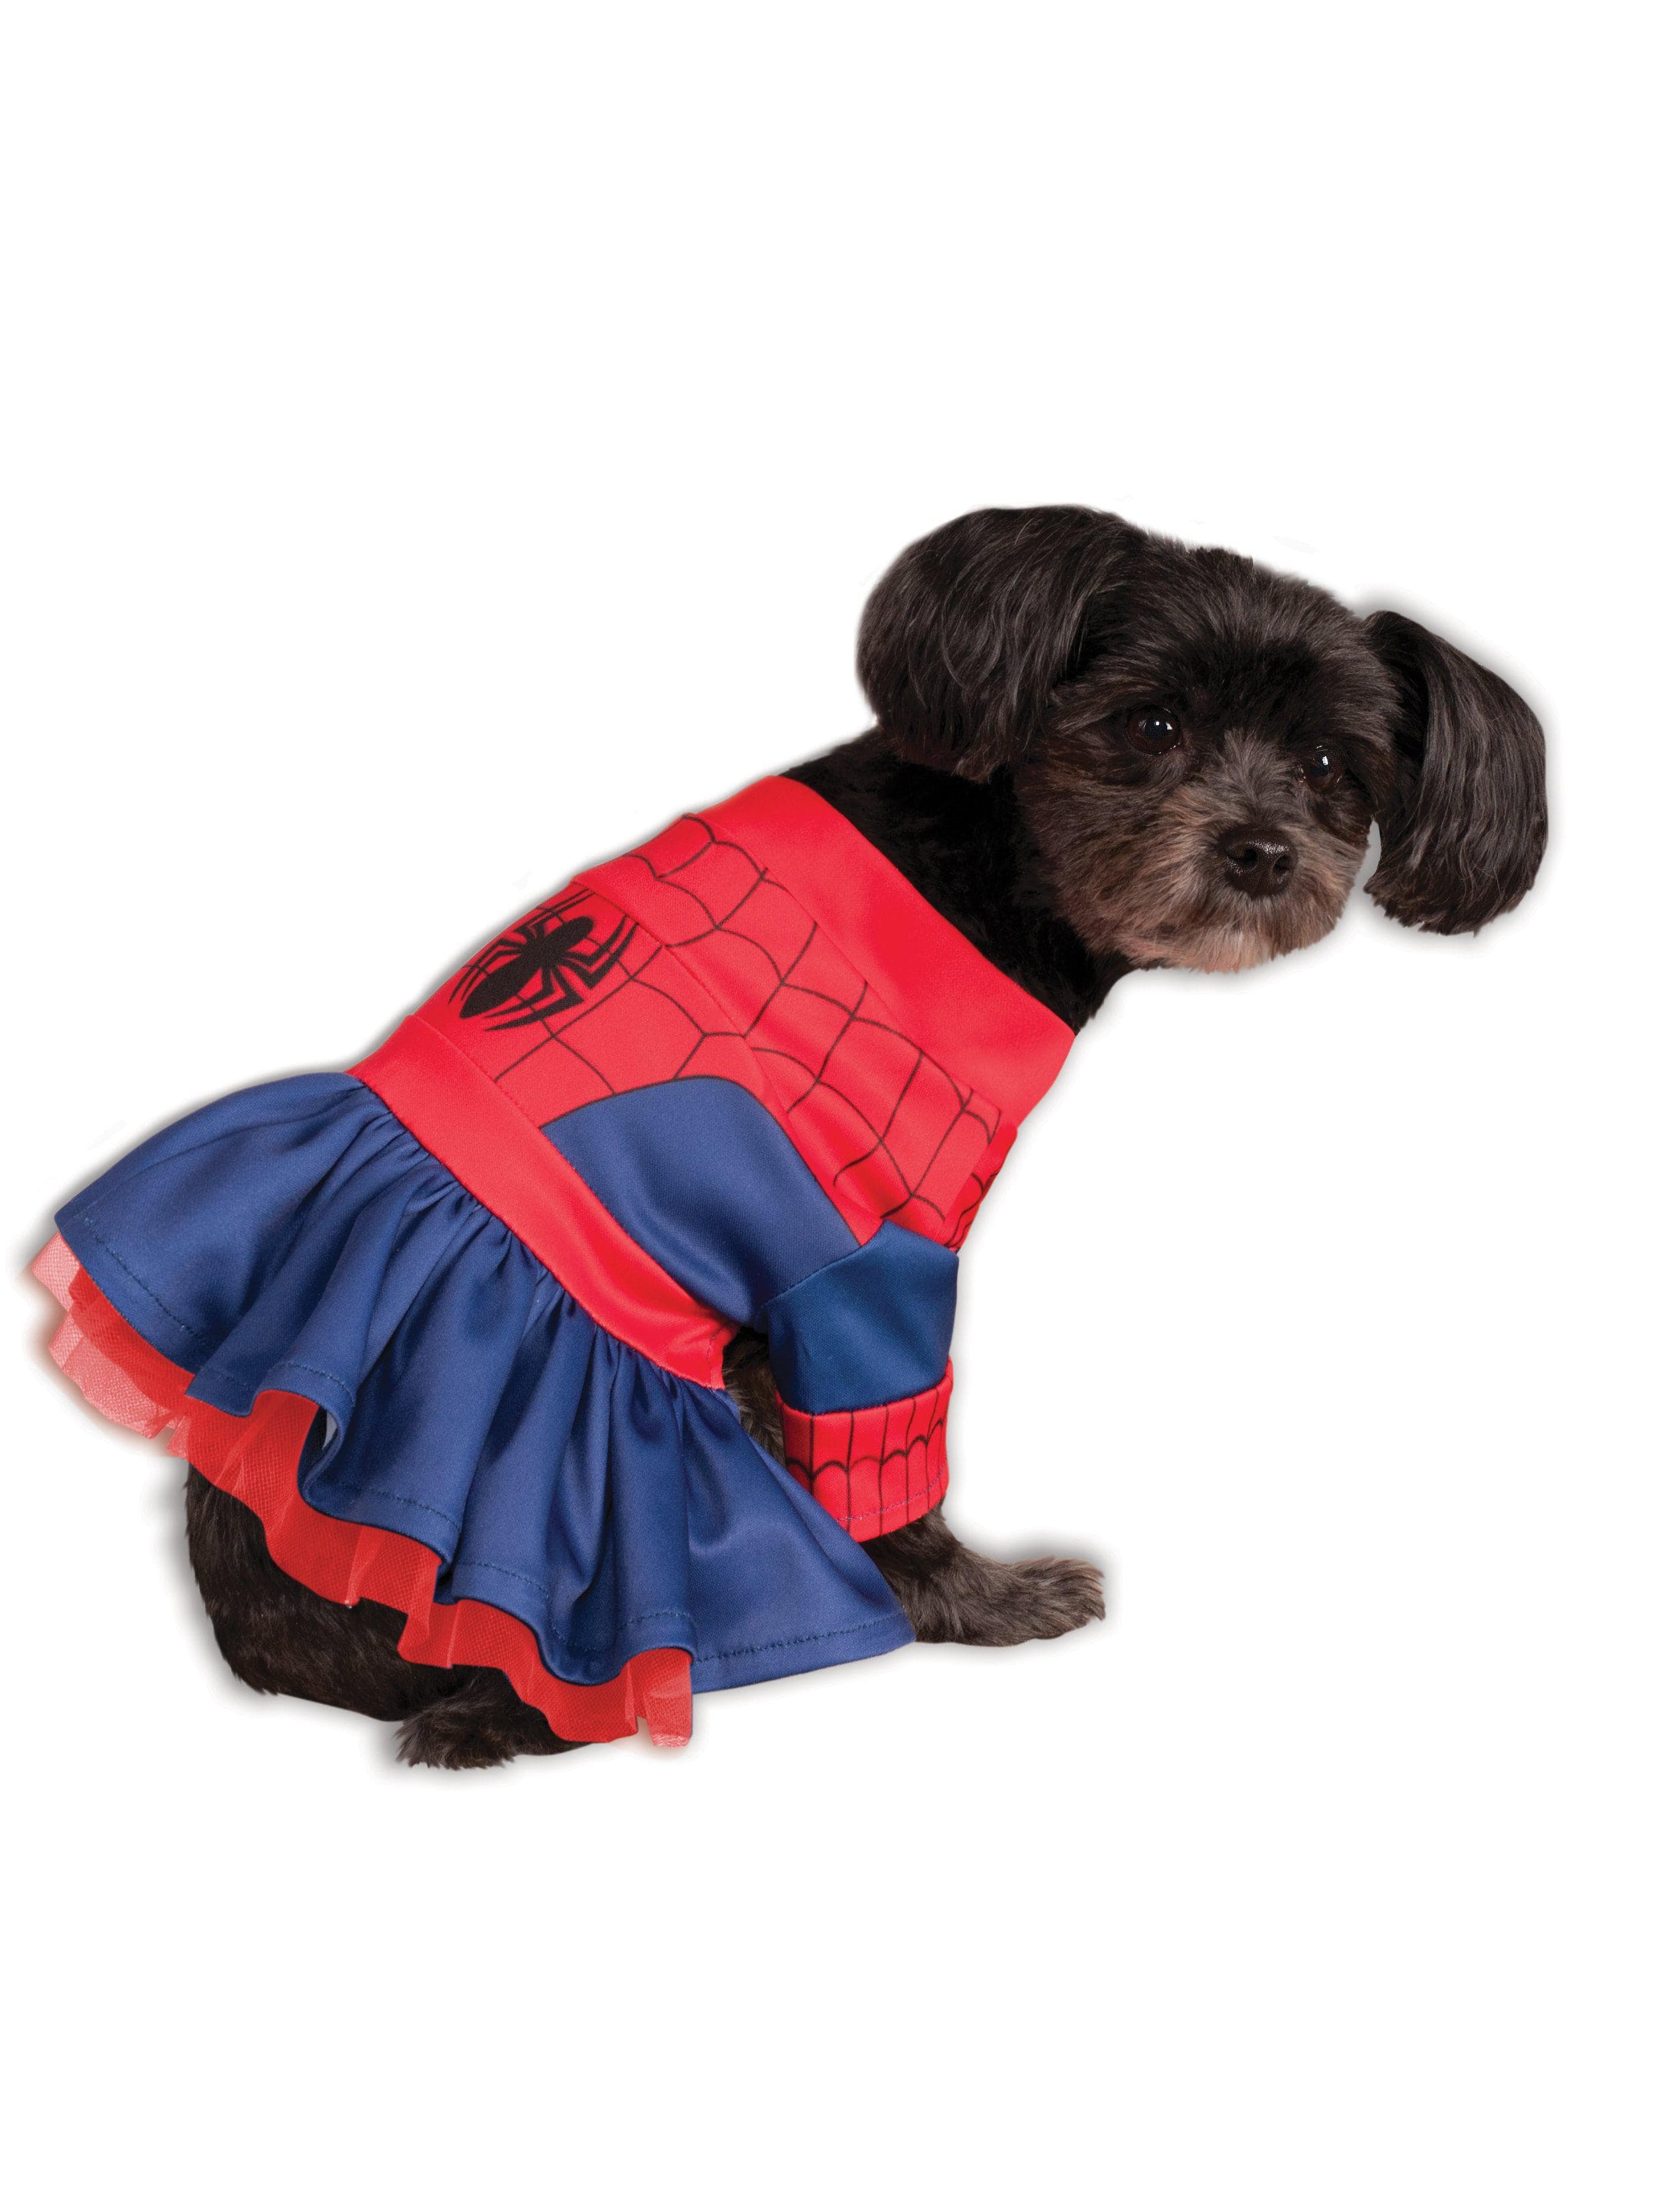 Marvel Spider-Girl Tutu Pet Costume - costumes.com